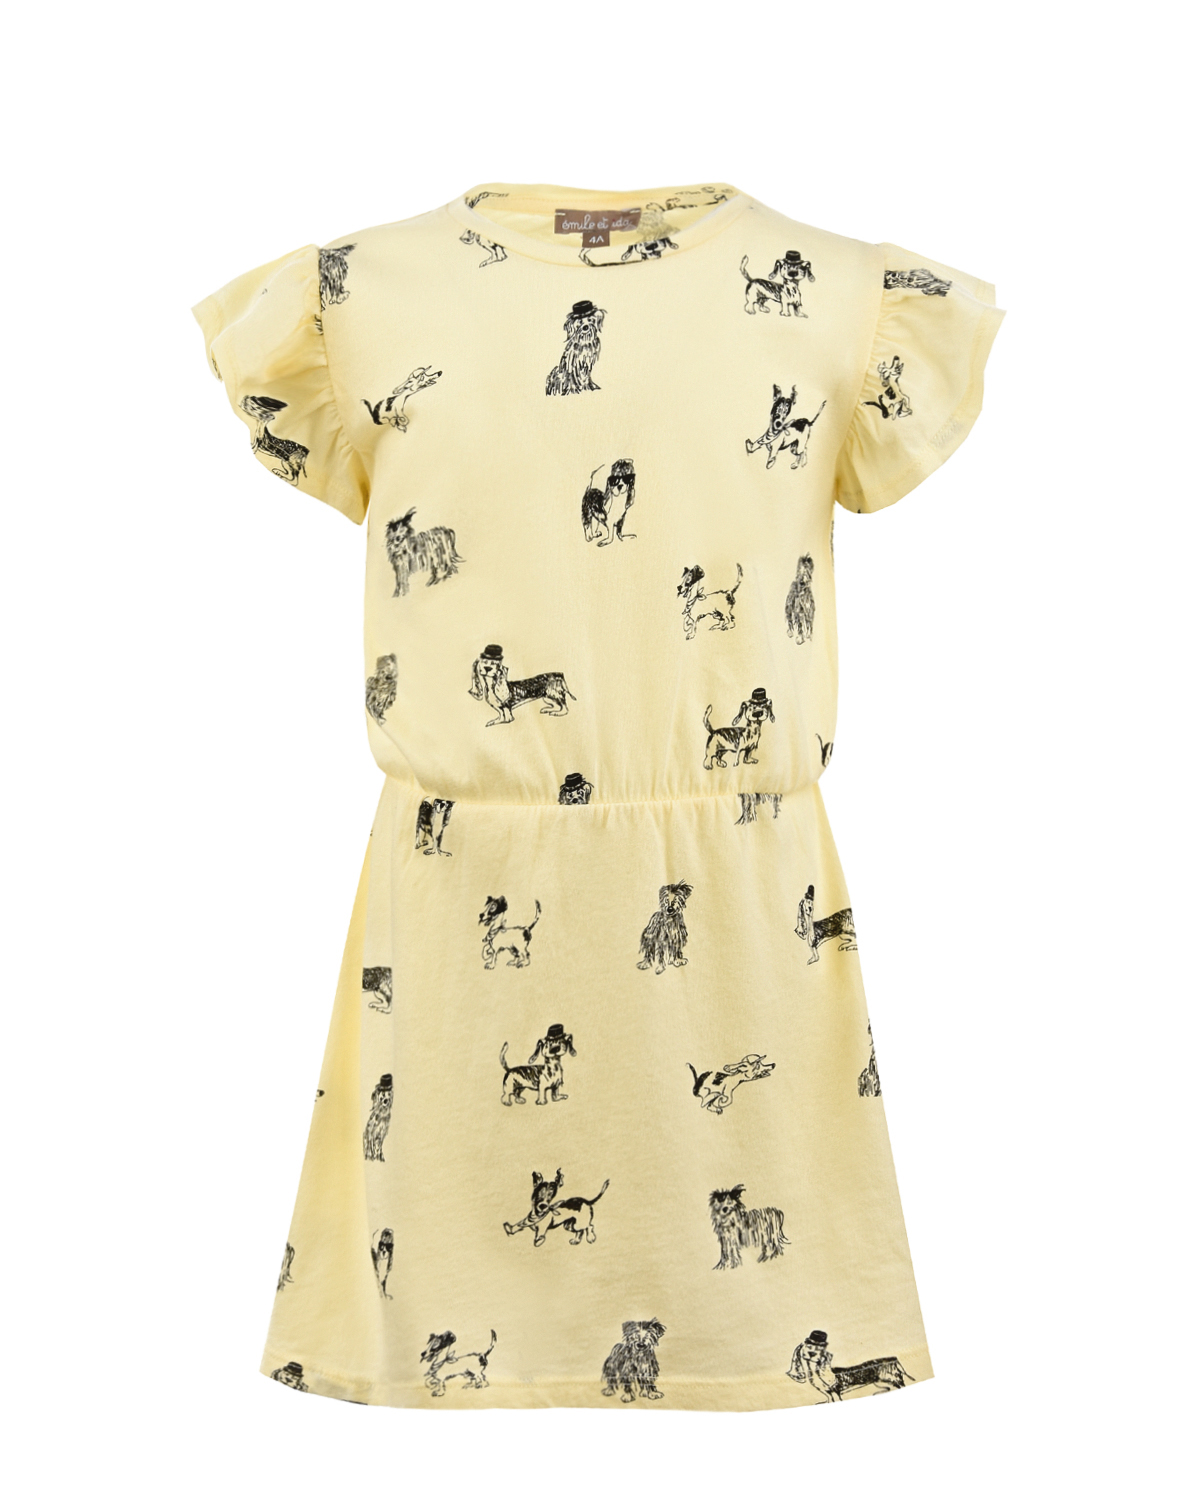 Хлопковое платье с принтом "Собачки" Emile et Ida детское, размер 92, цвет желтый - фото 1